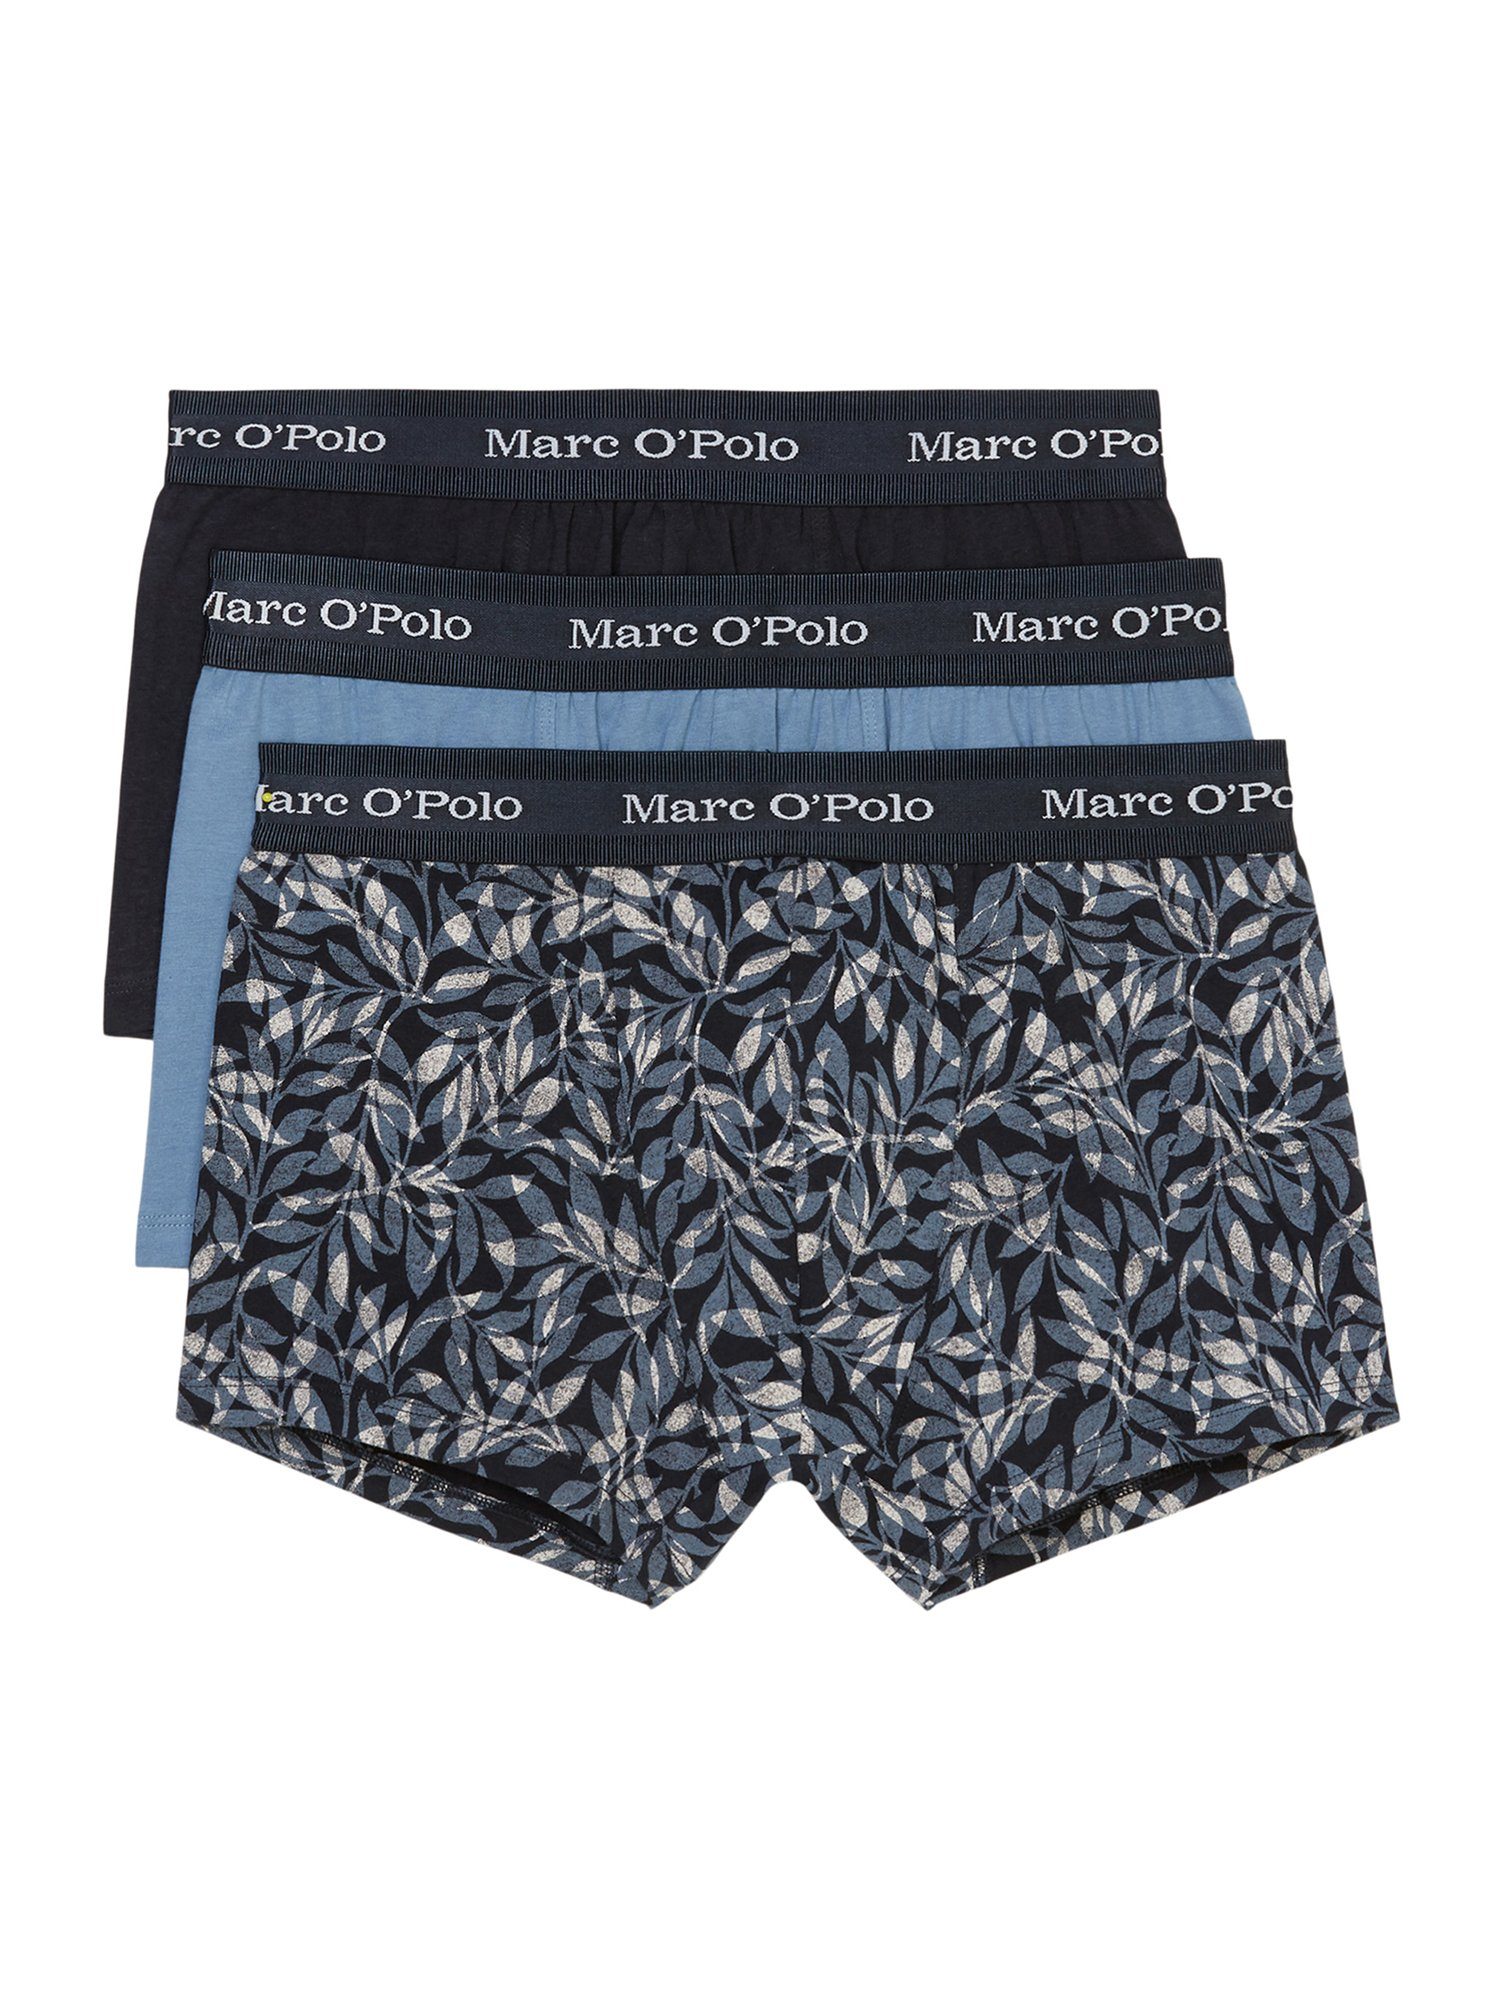 Marc O'Polo Boxershorts online kaufen | OTTO